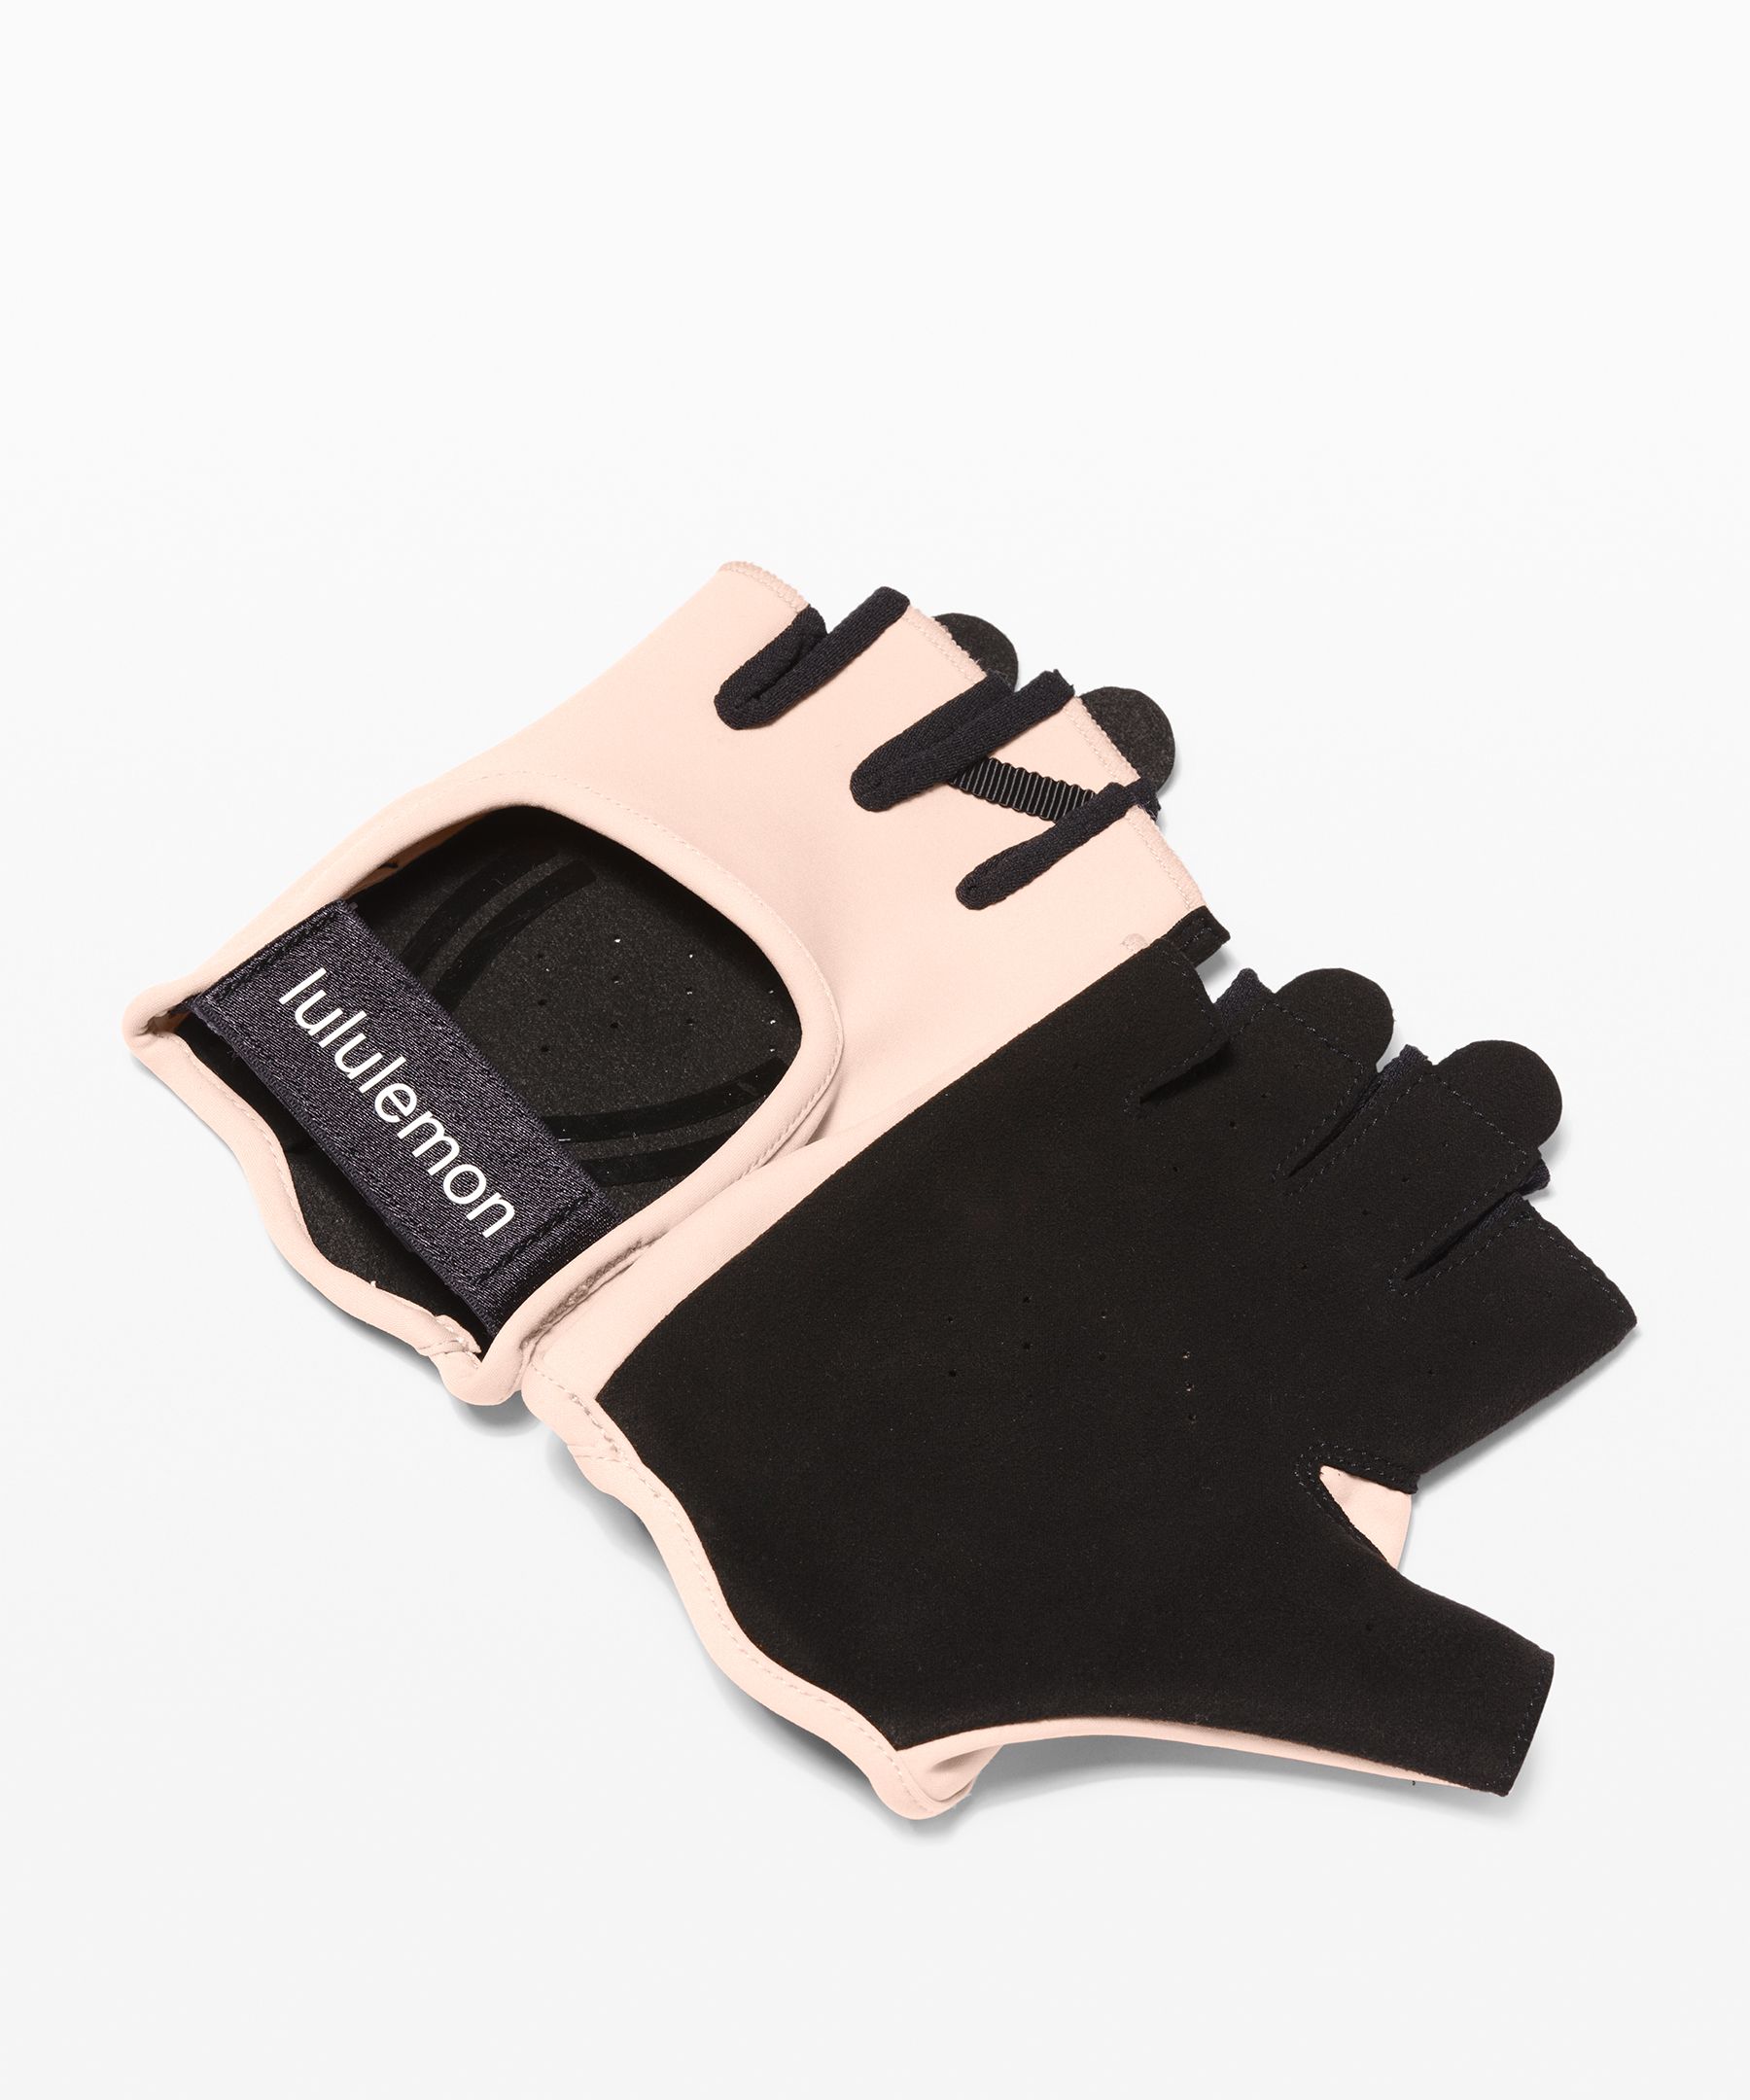 Lululemon Uplift Training Gloves In Misty Shell/black